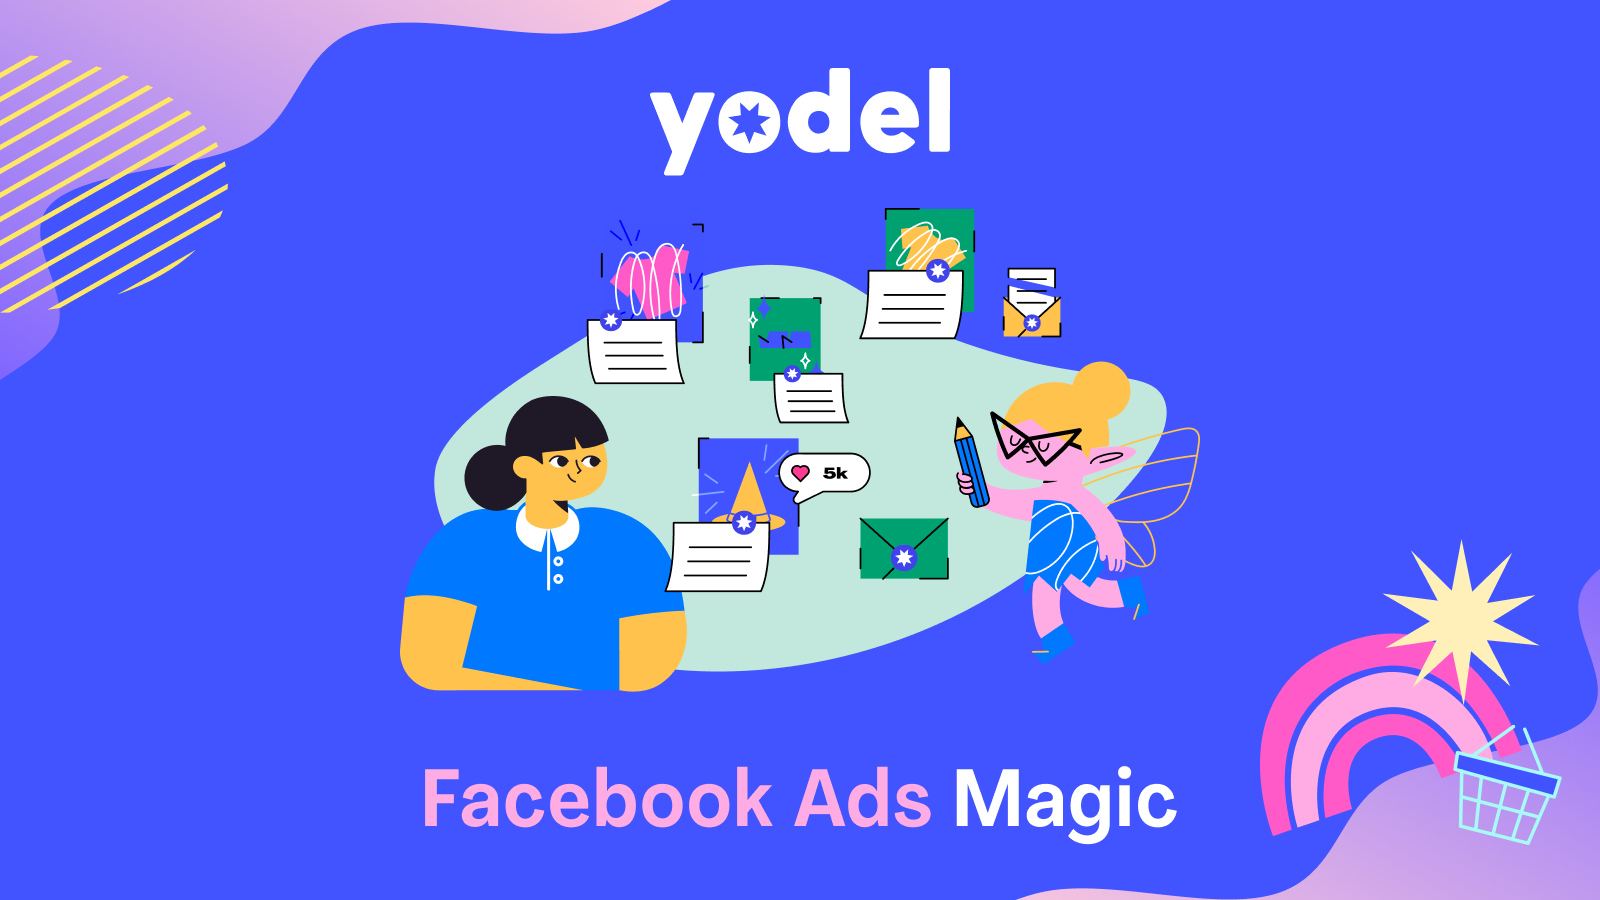 Facebook Ads Magic av Yodel